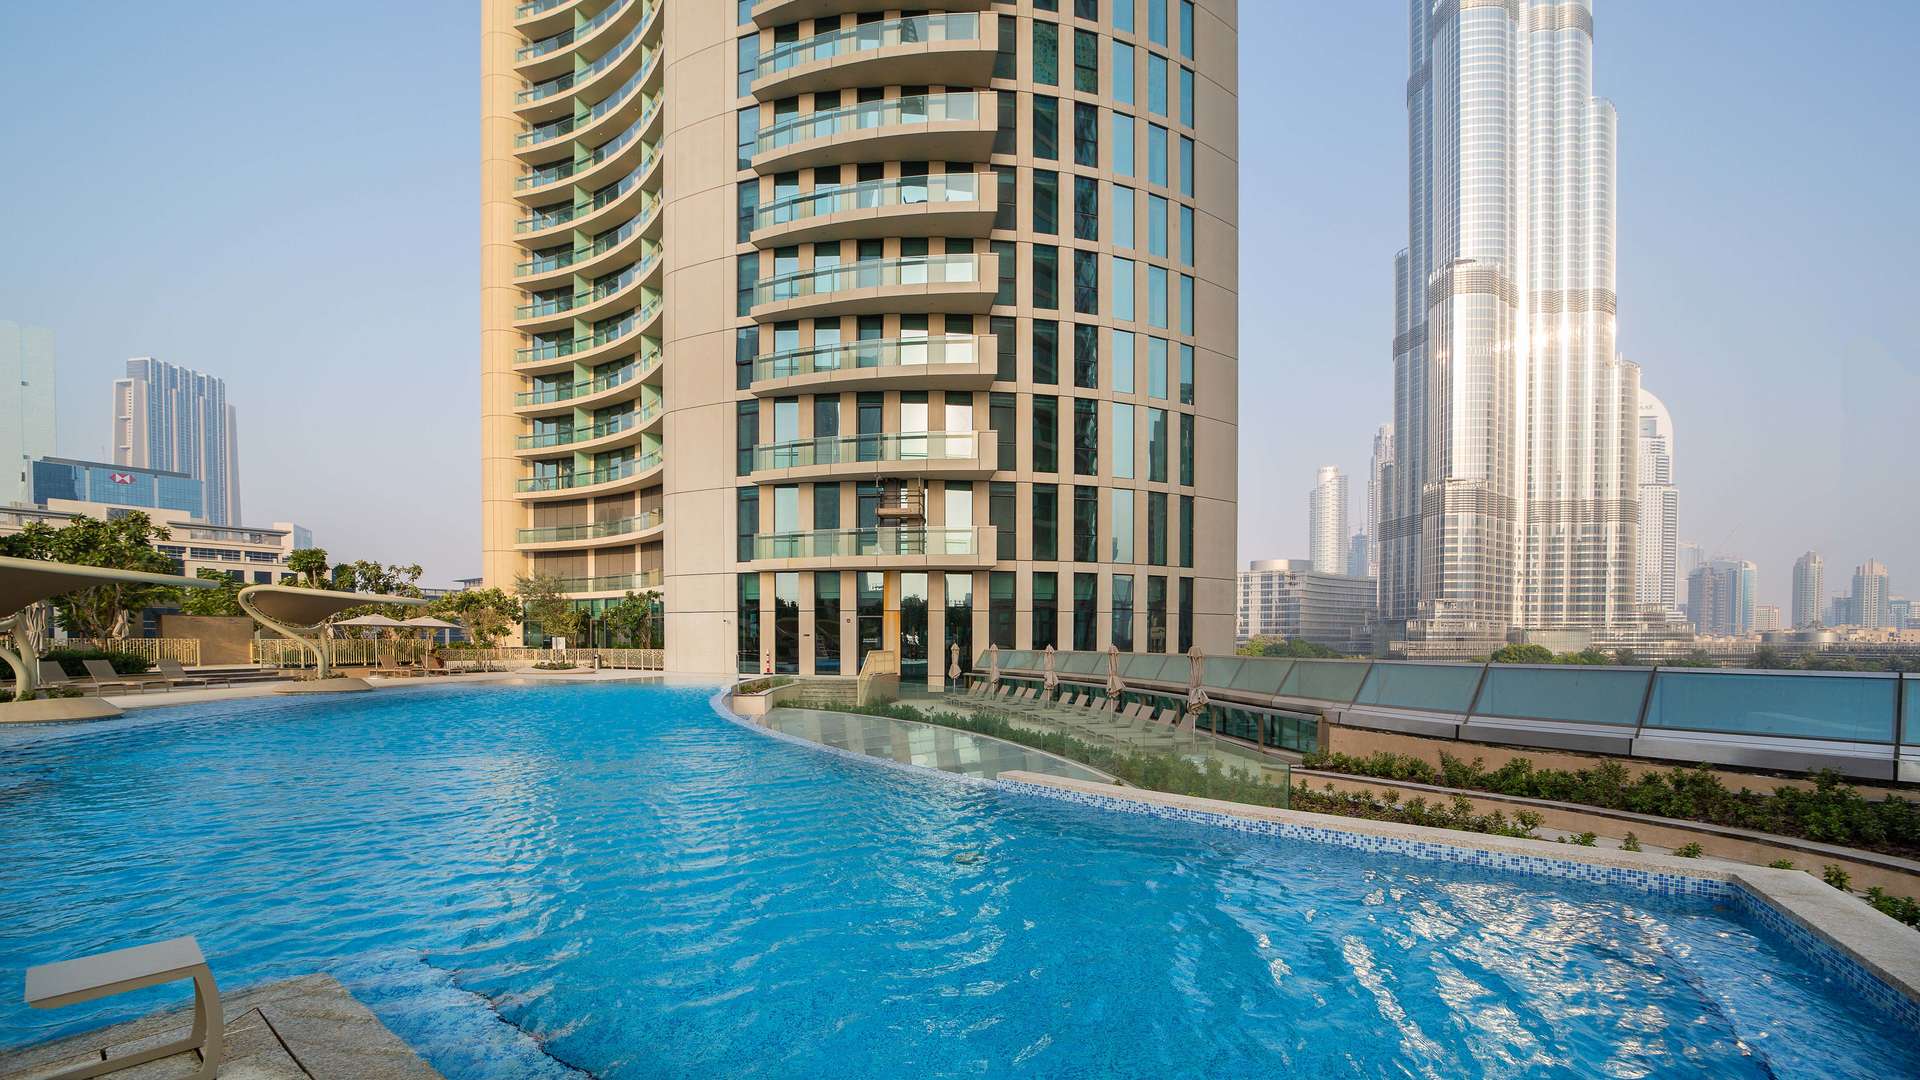 Burj Views Apartments At Downtown Dubai By Emaar